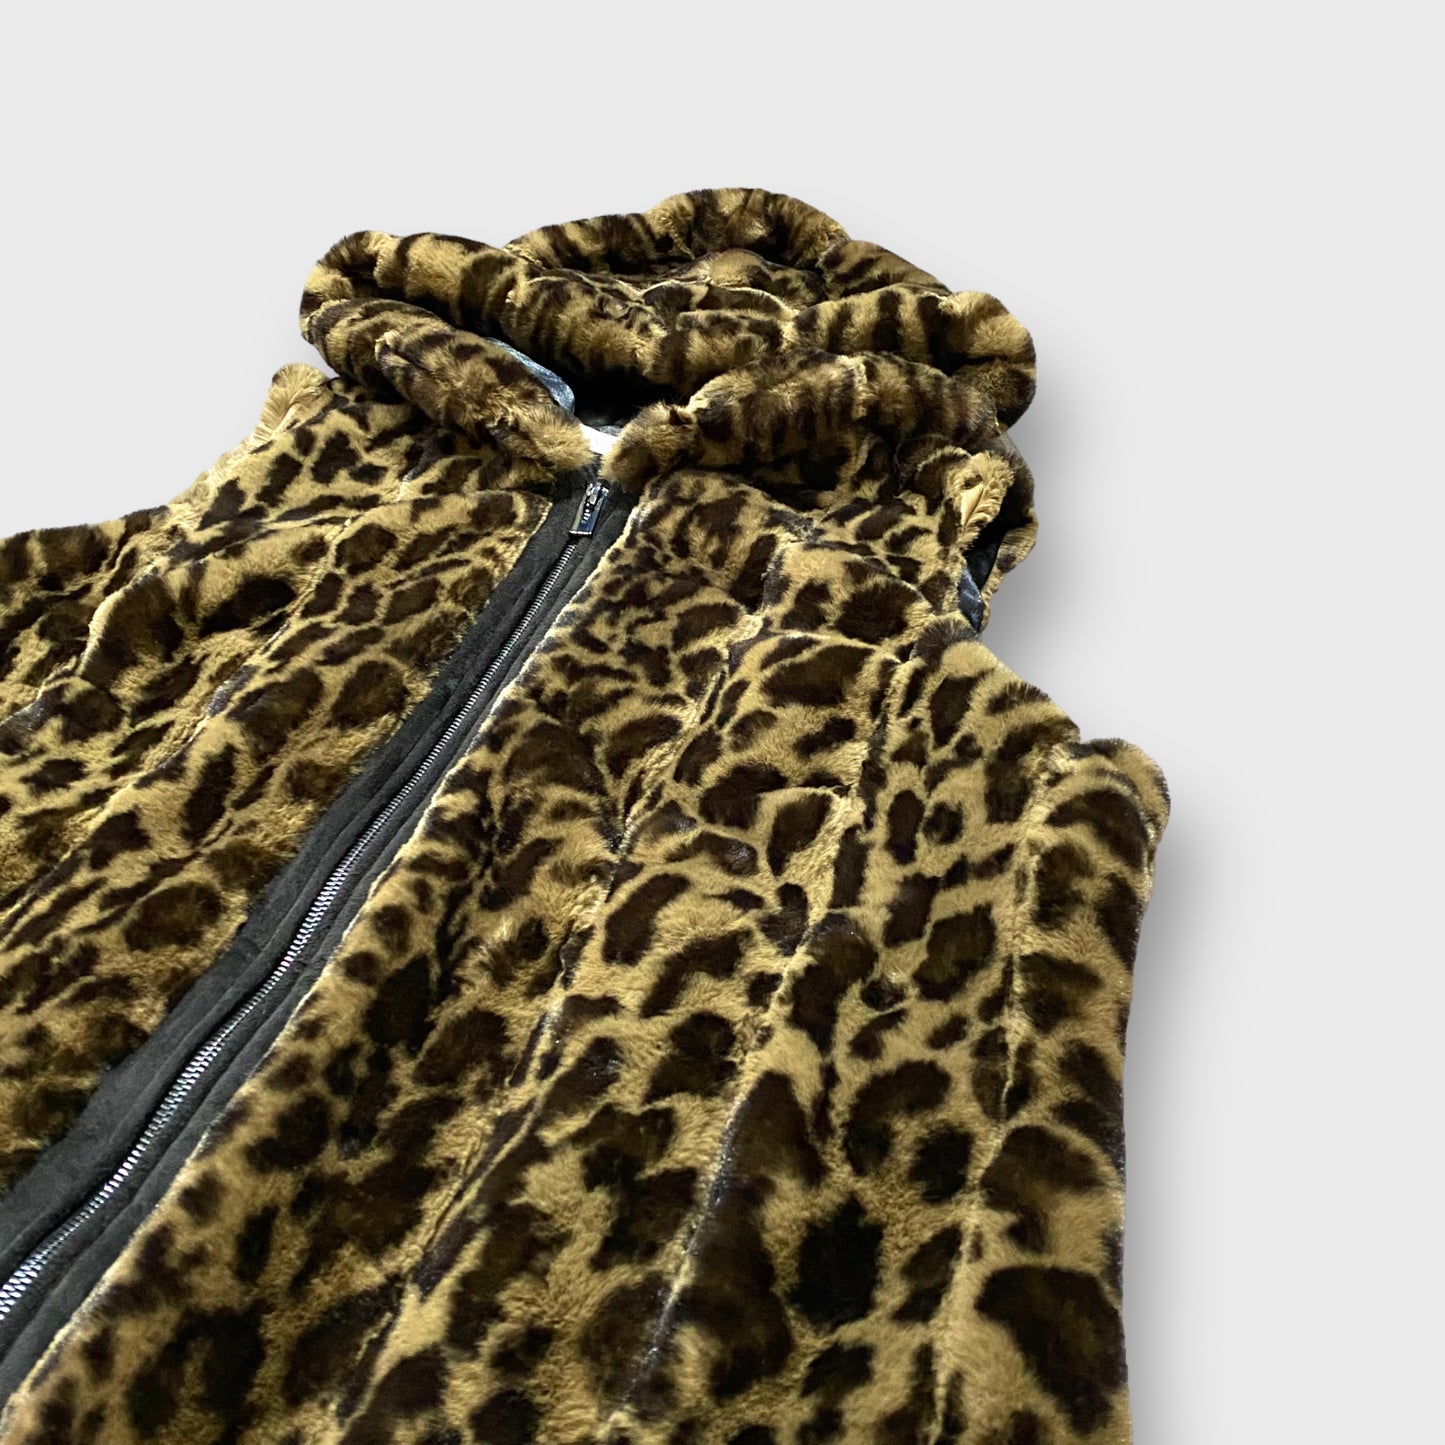 Leopard pattern hooded fur vest